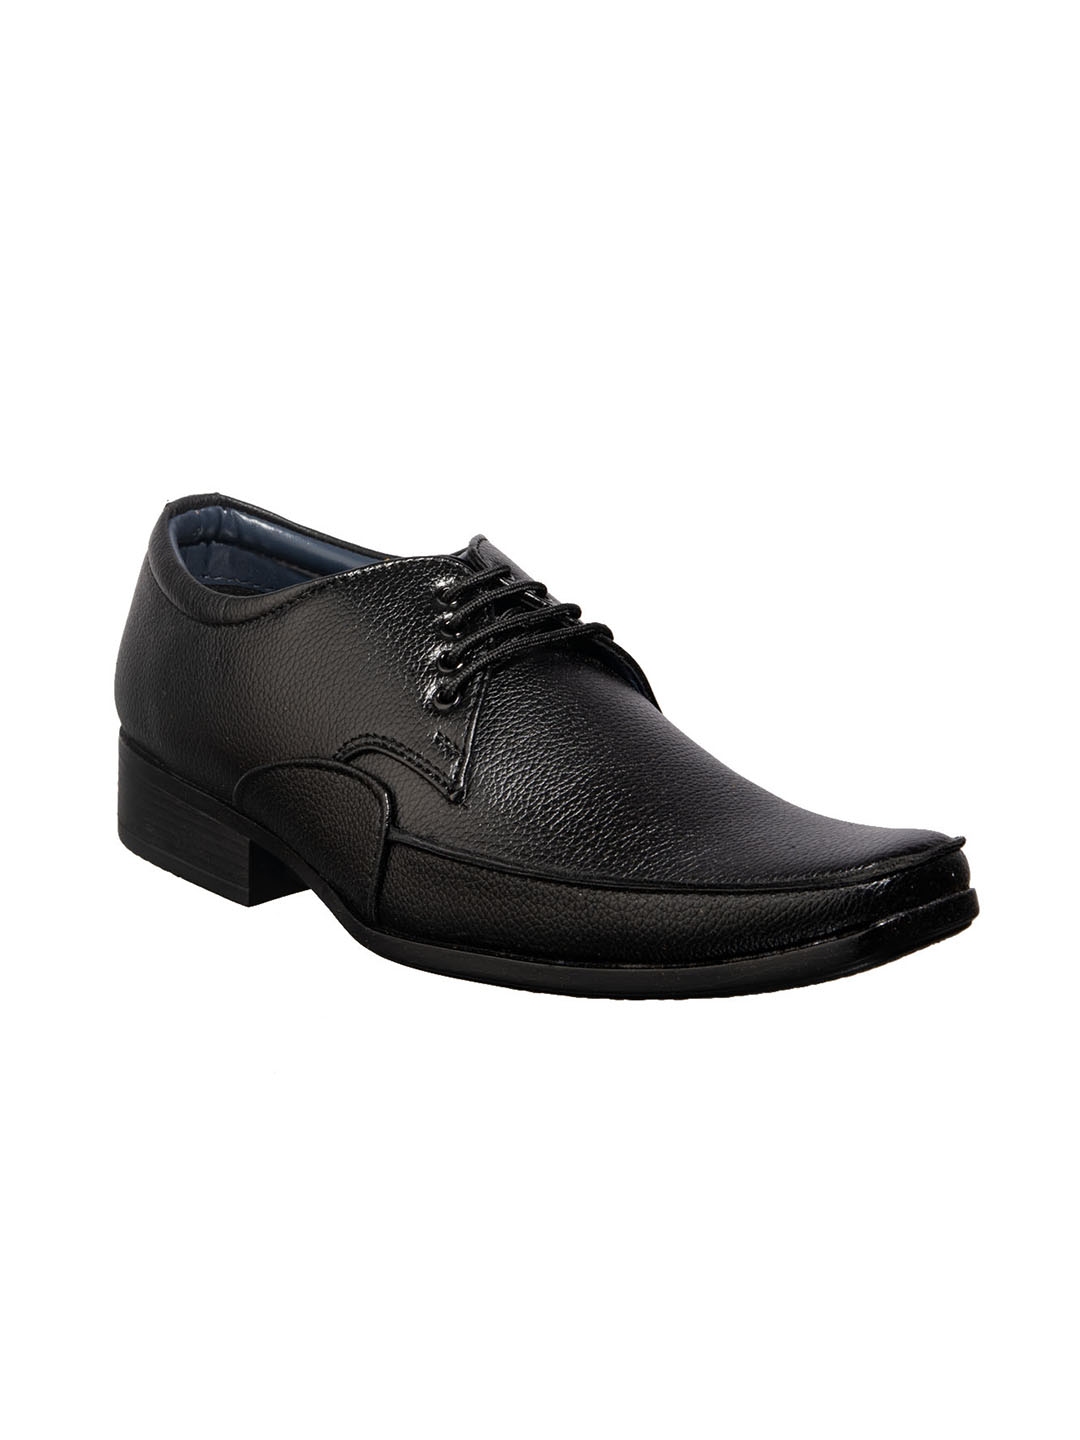 Buy Khadims Men Black Solid Formal Derbys - Formal Shoes for Men ...